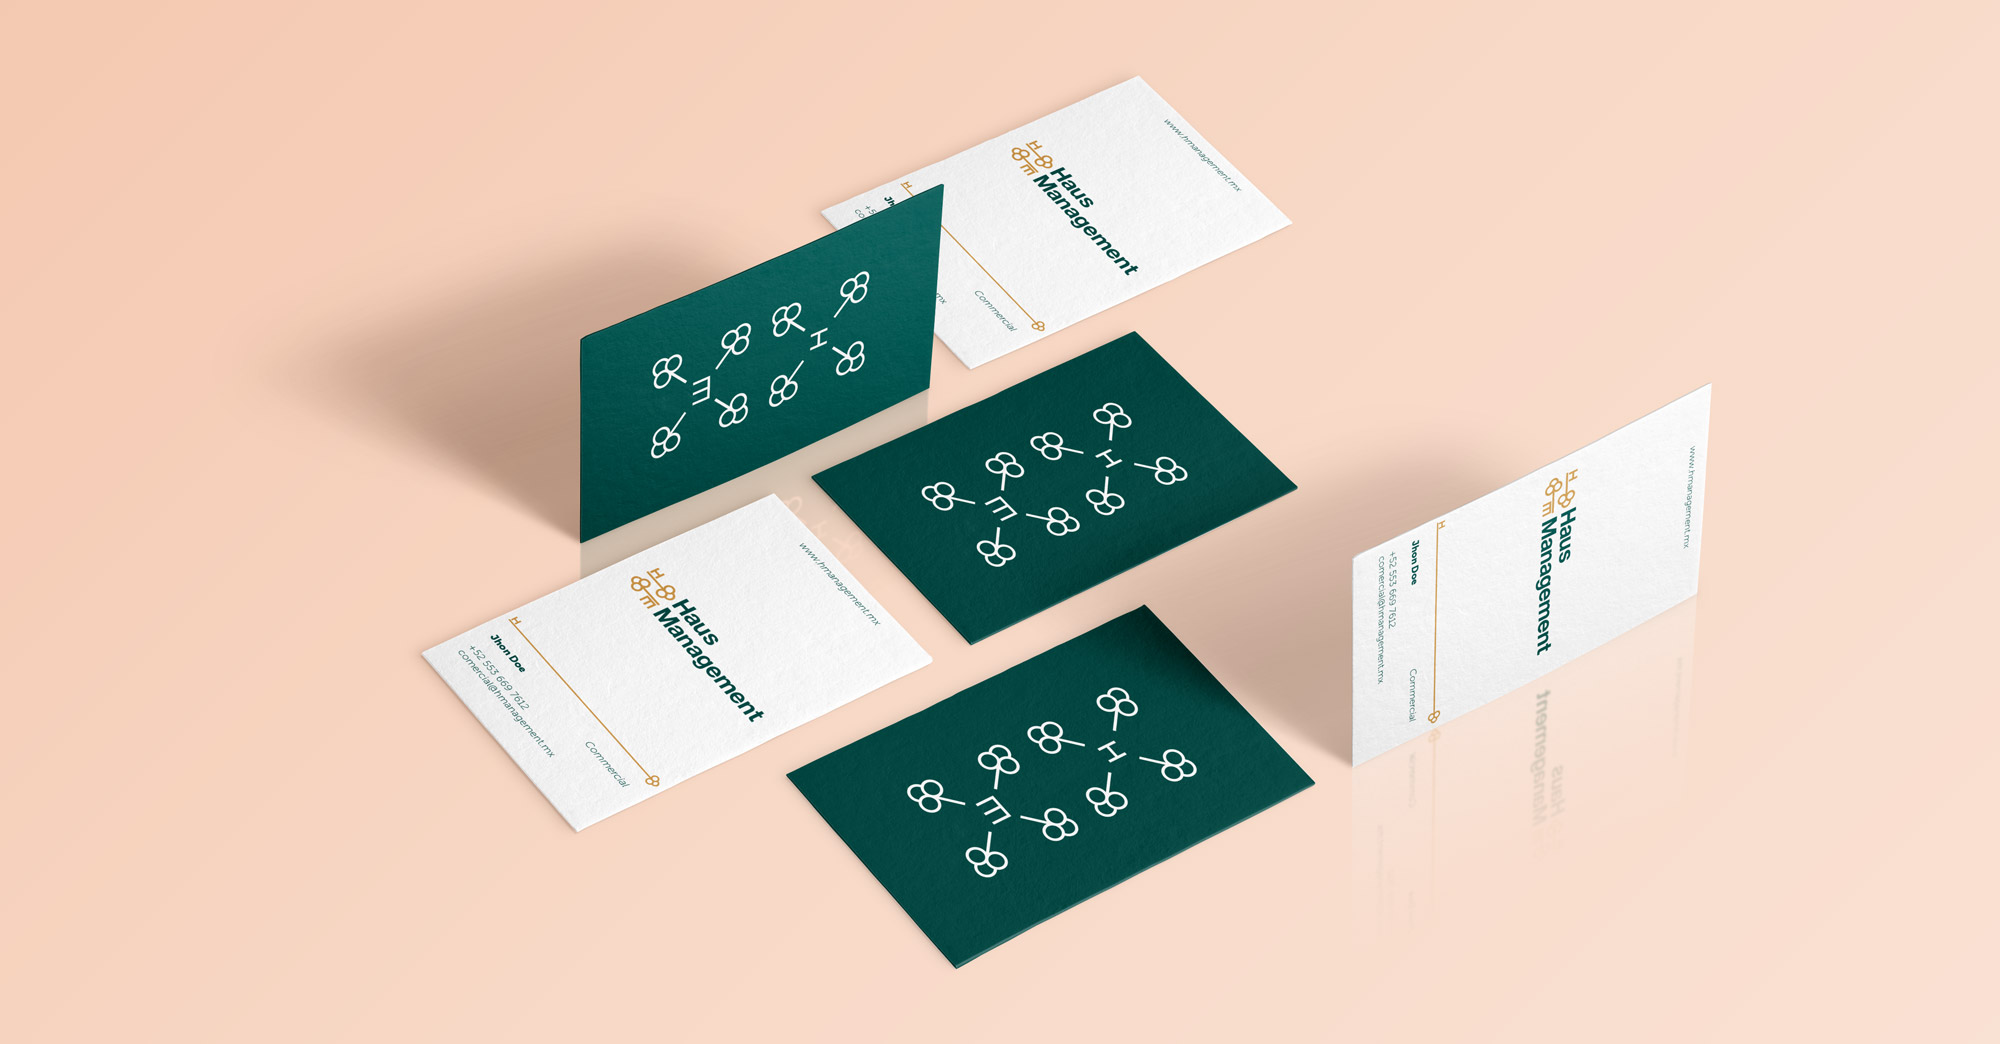 herrera-branding-studio-haus-management-properties-brand-identity-stationary-cards